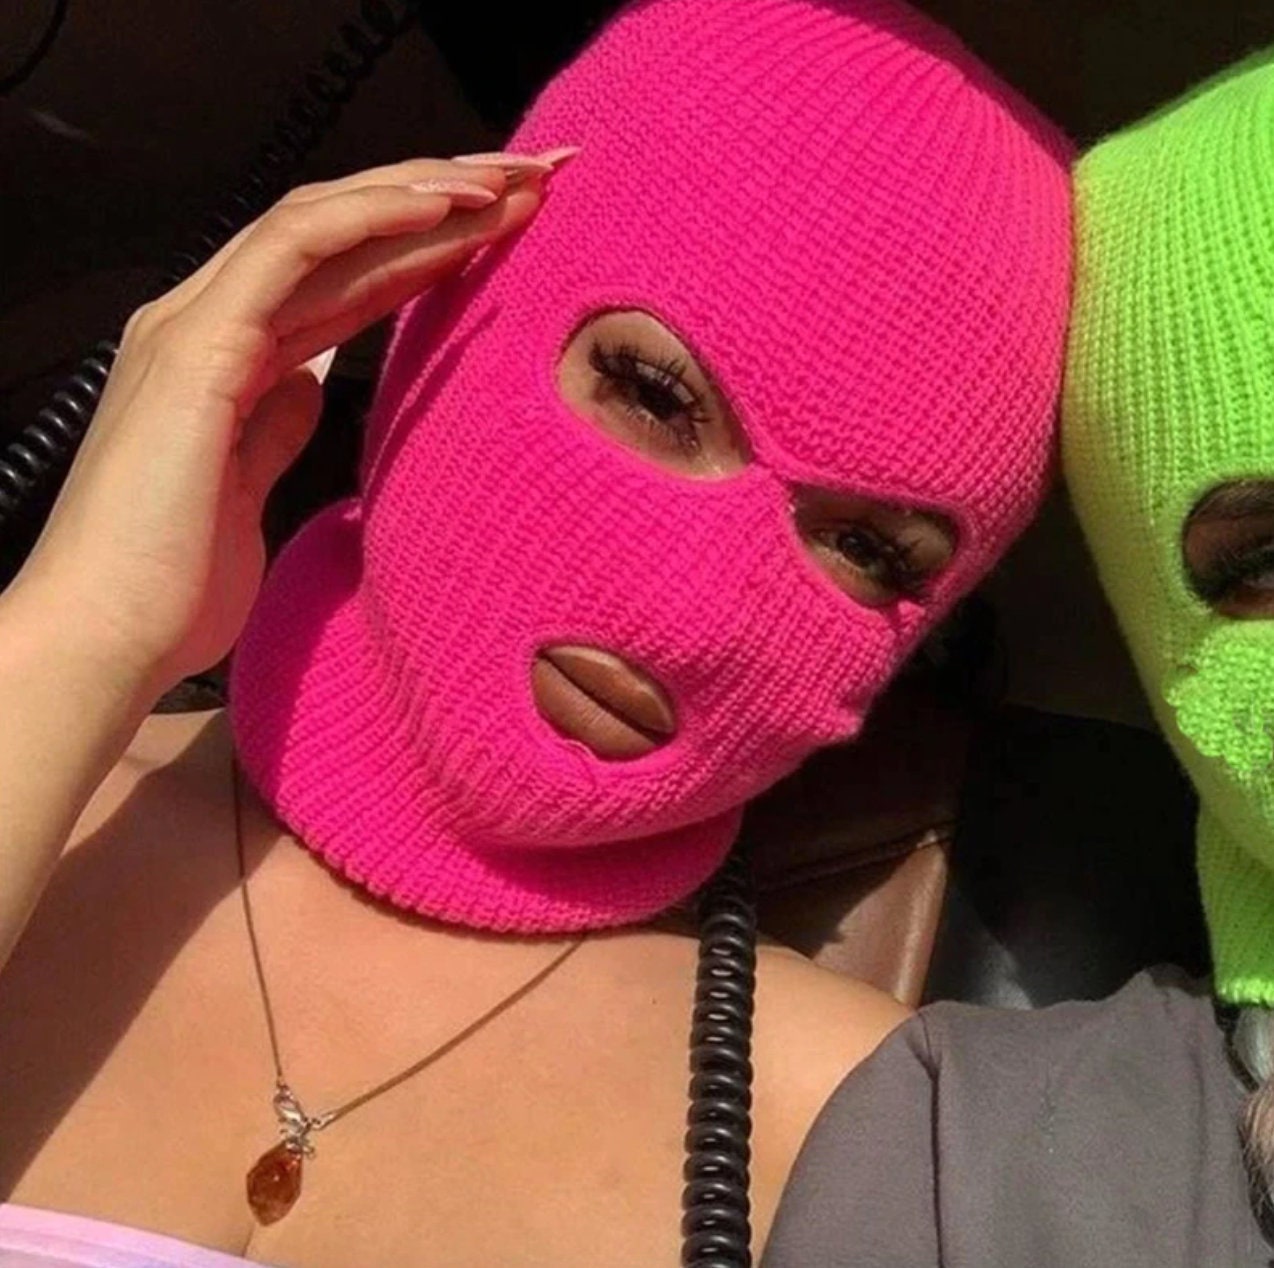 SKI MASK 3 hole balaclava embroidered mask custom rave outfit | Etsy